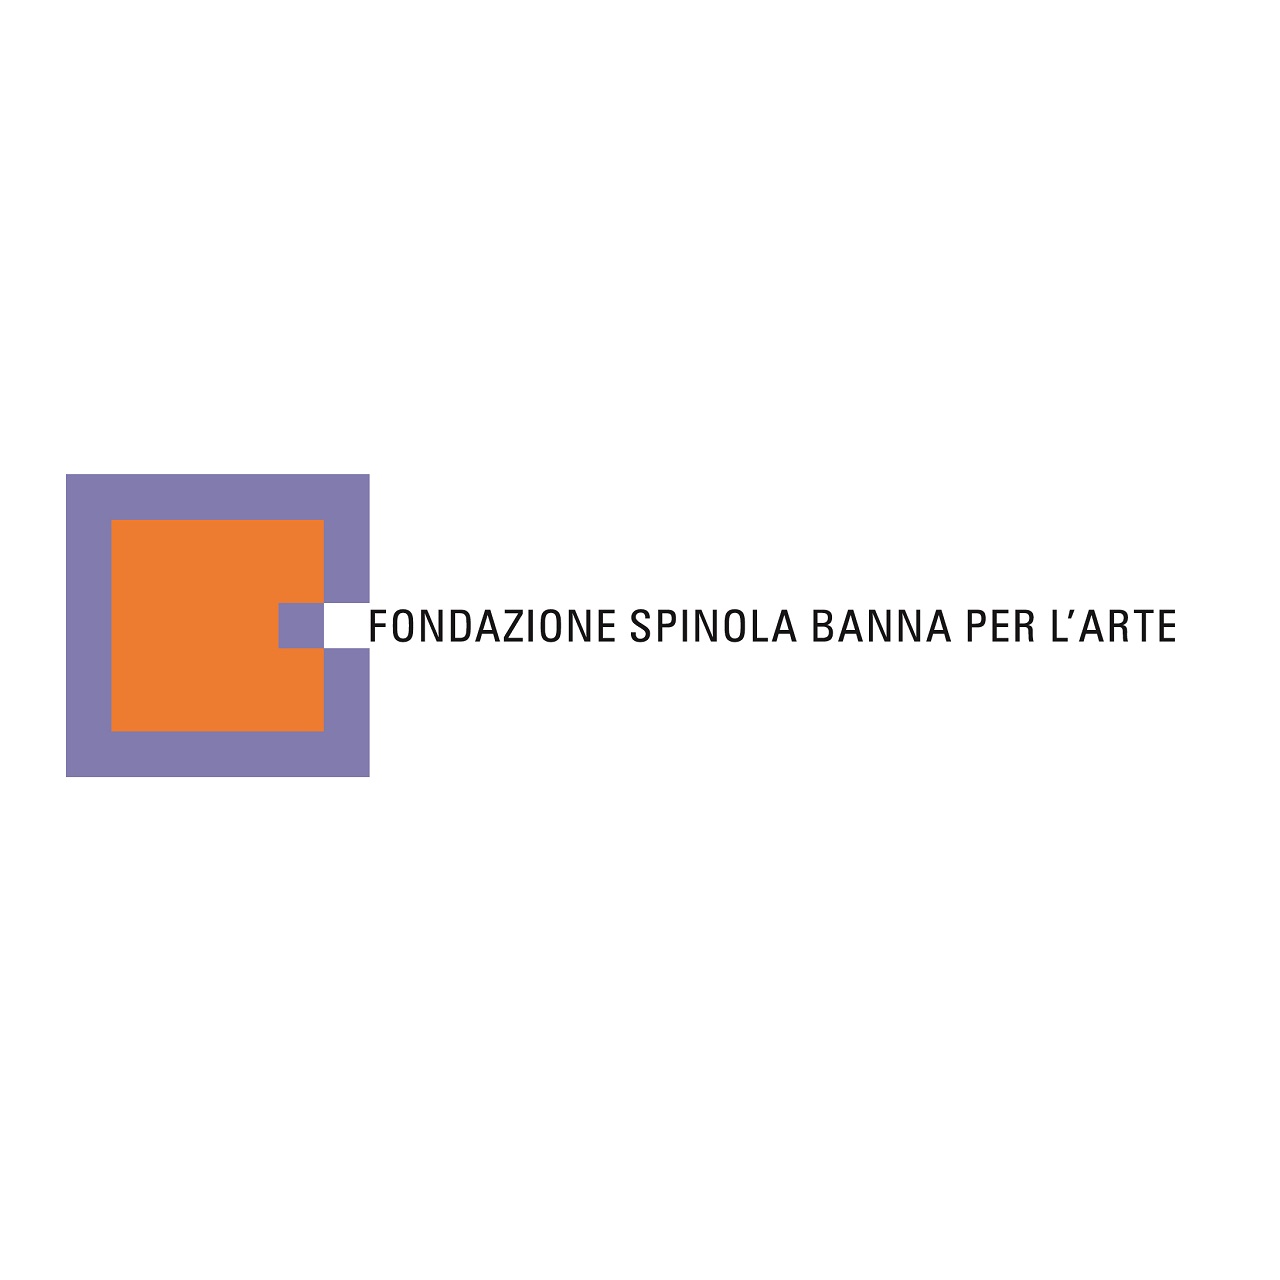 Fondazione Spinola Banna per l’Arte